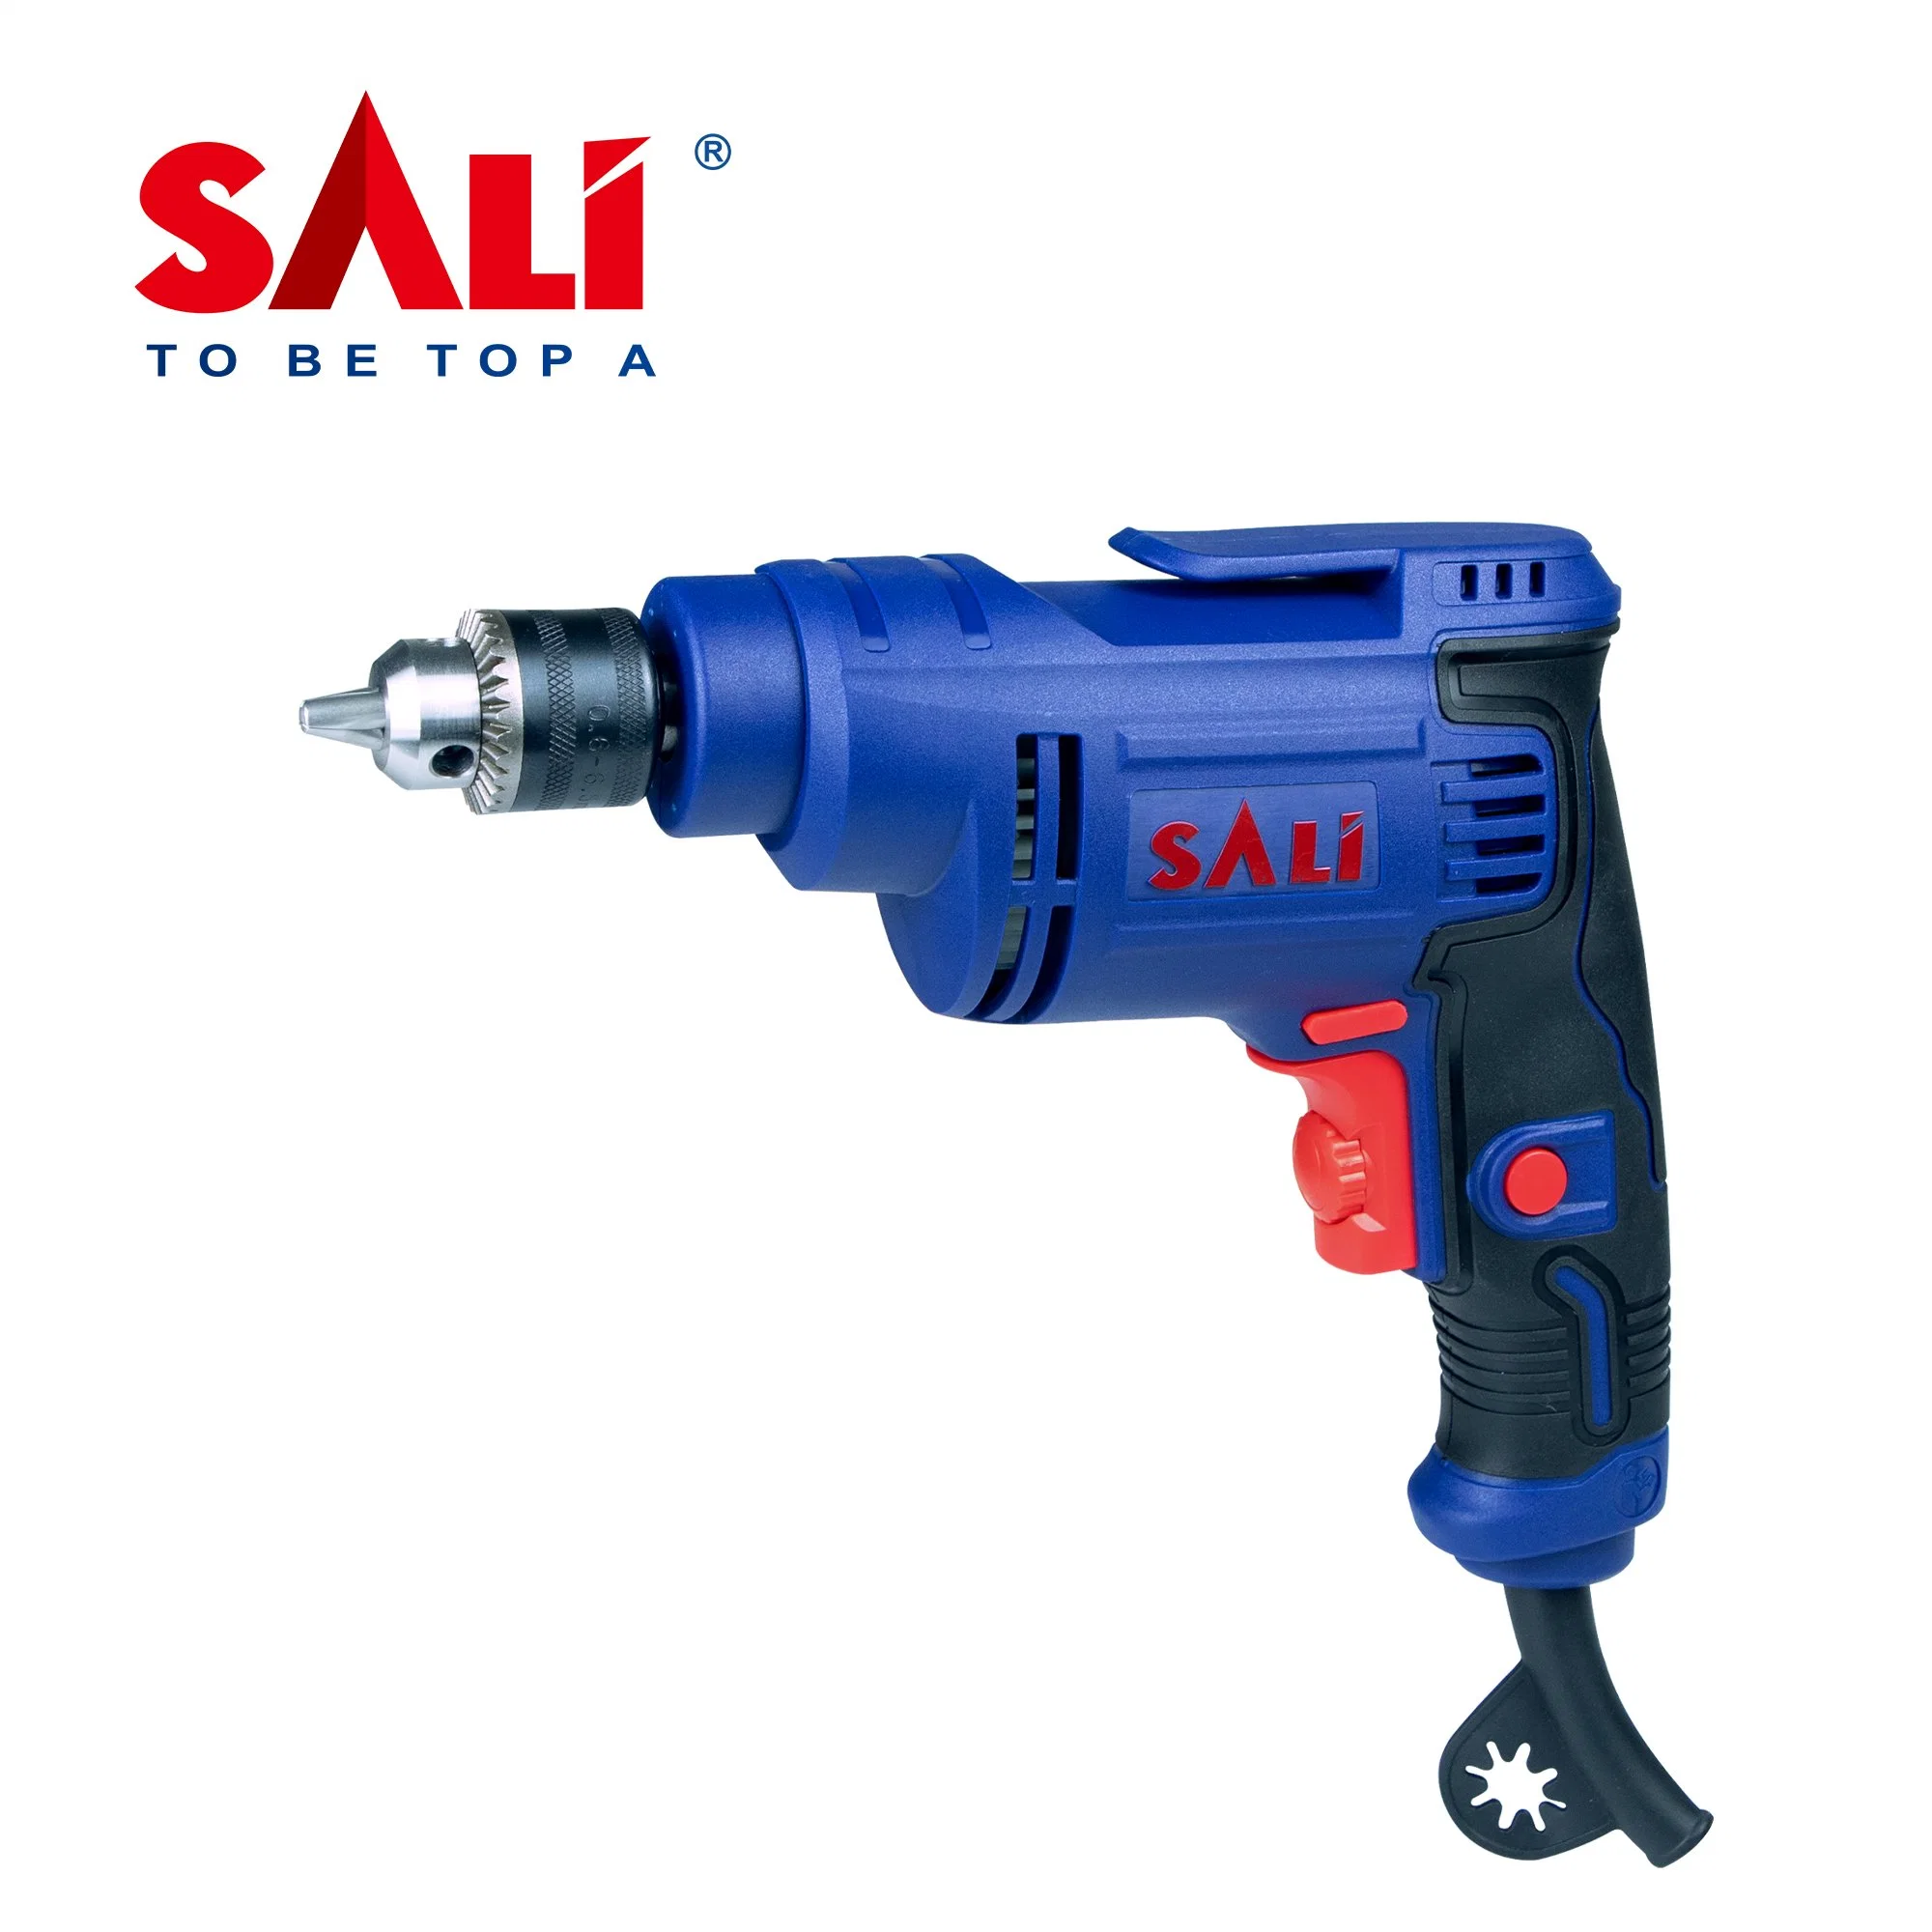 Sali 2106p 400W 6.5mm Professional Electric Drill